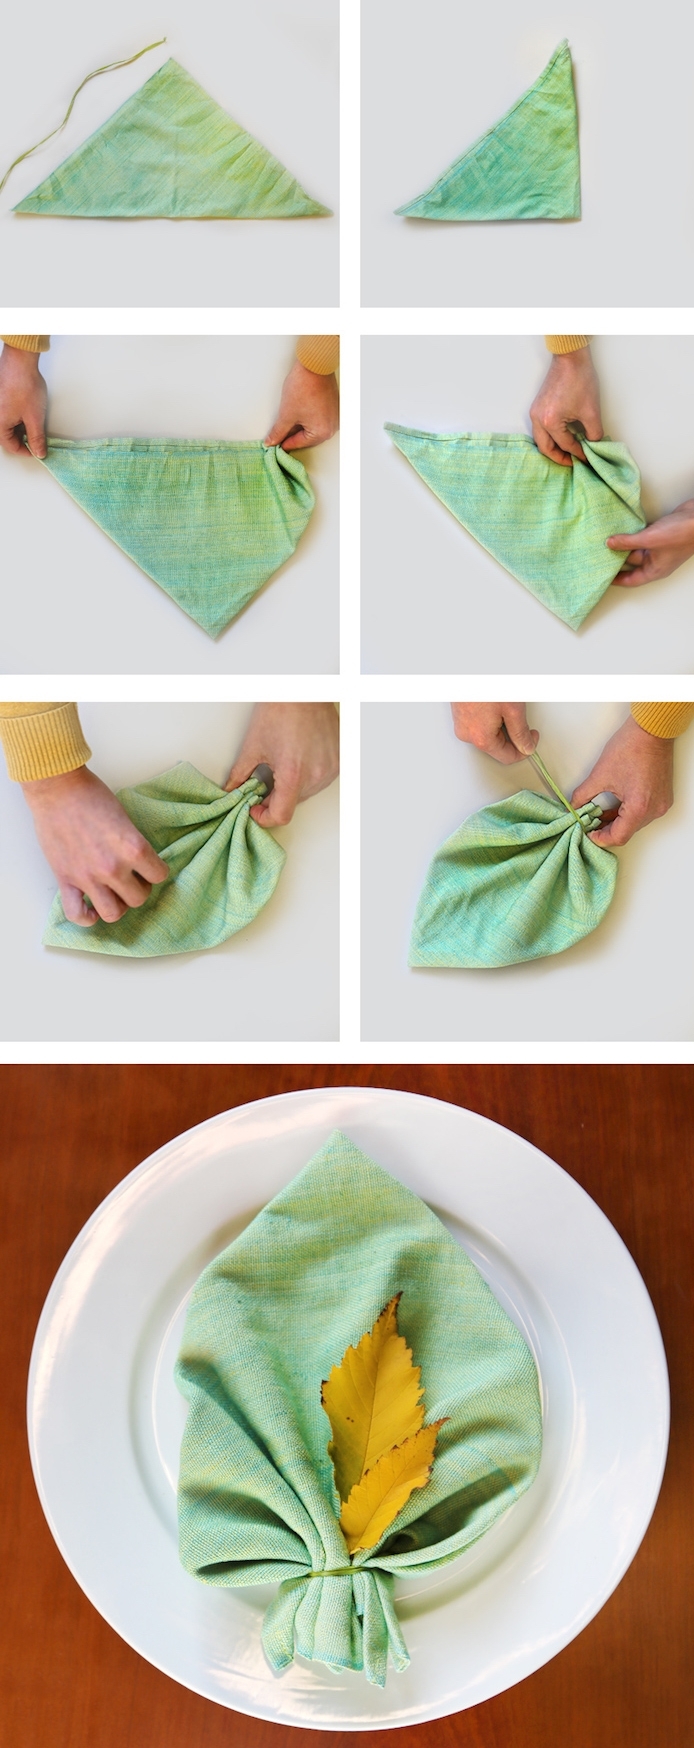 images avec instructions pour apprendre à plier une serviette, déco de table avec serviette verte en forme de feuille